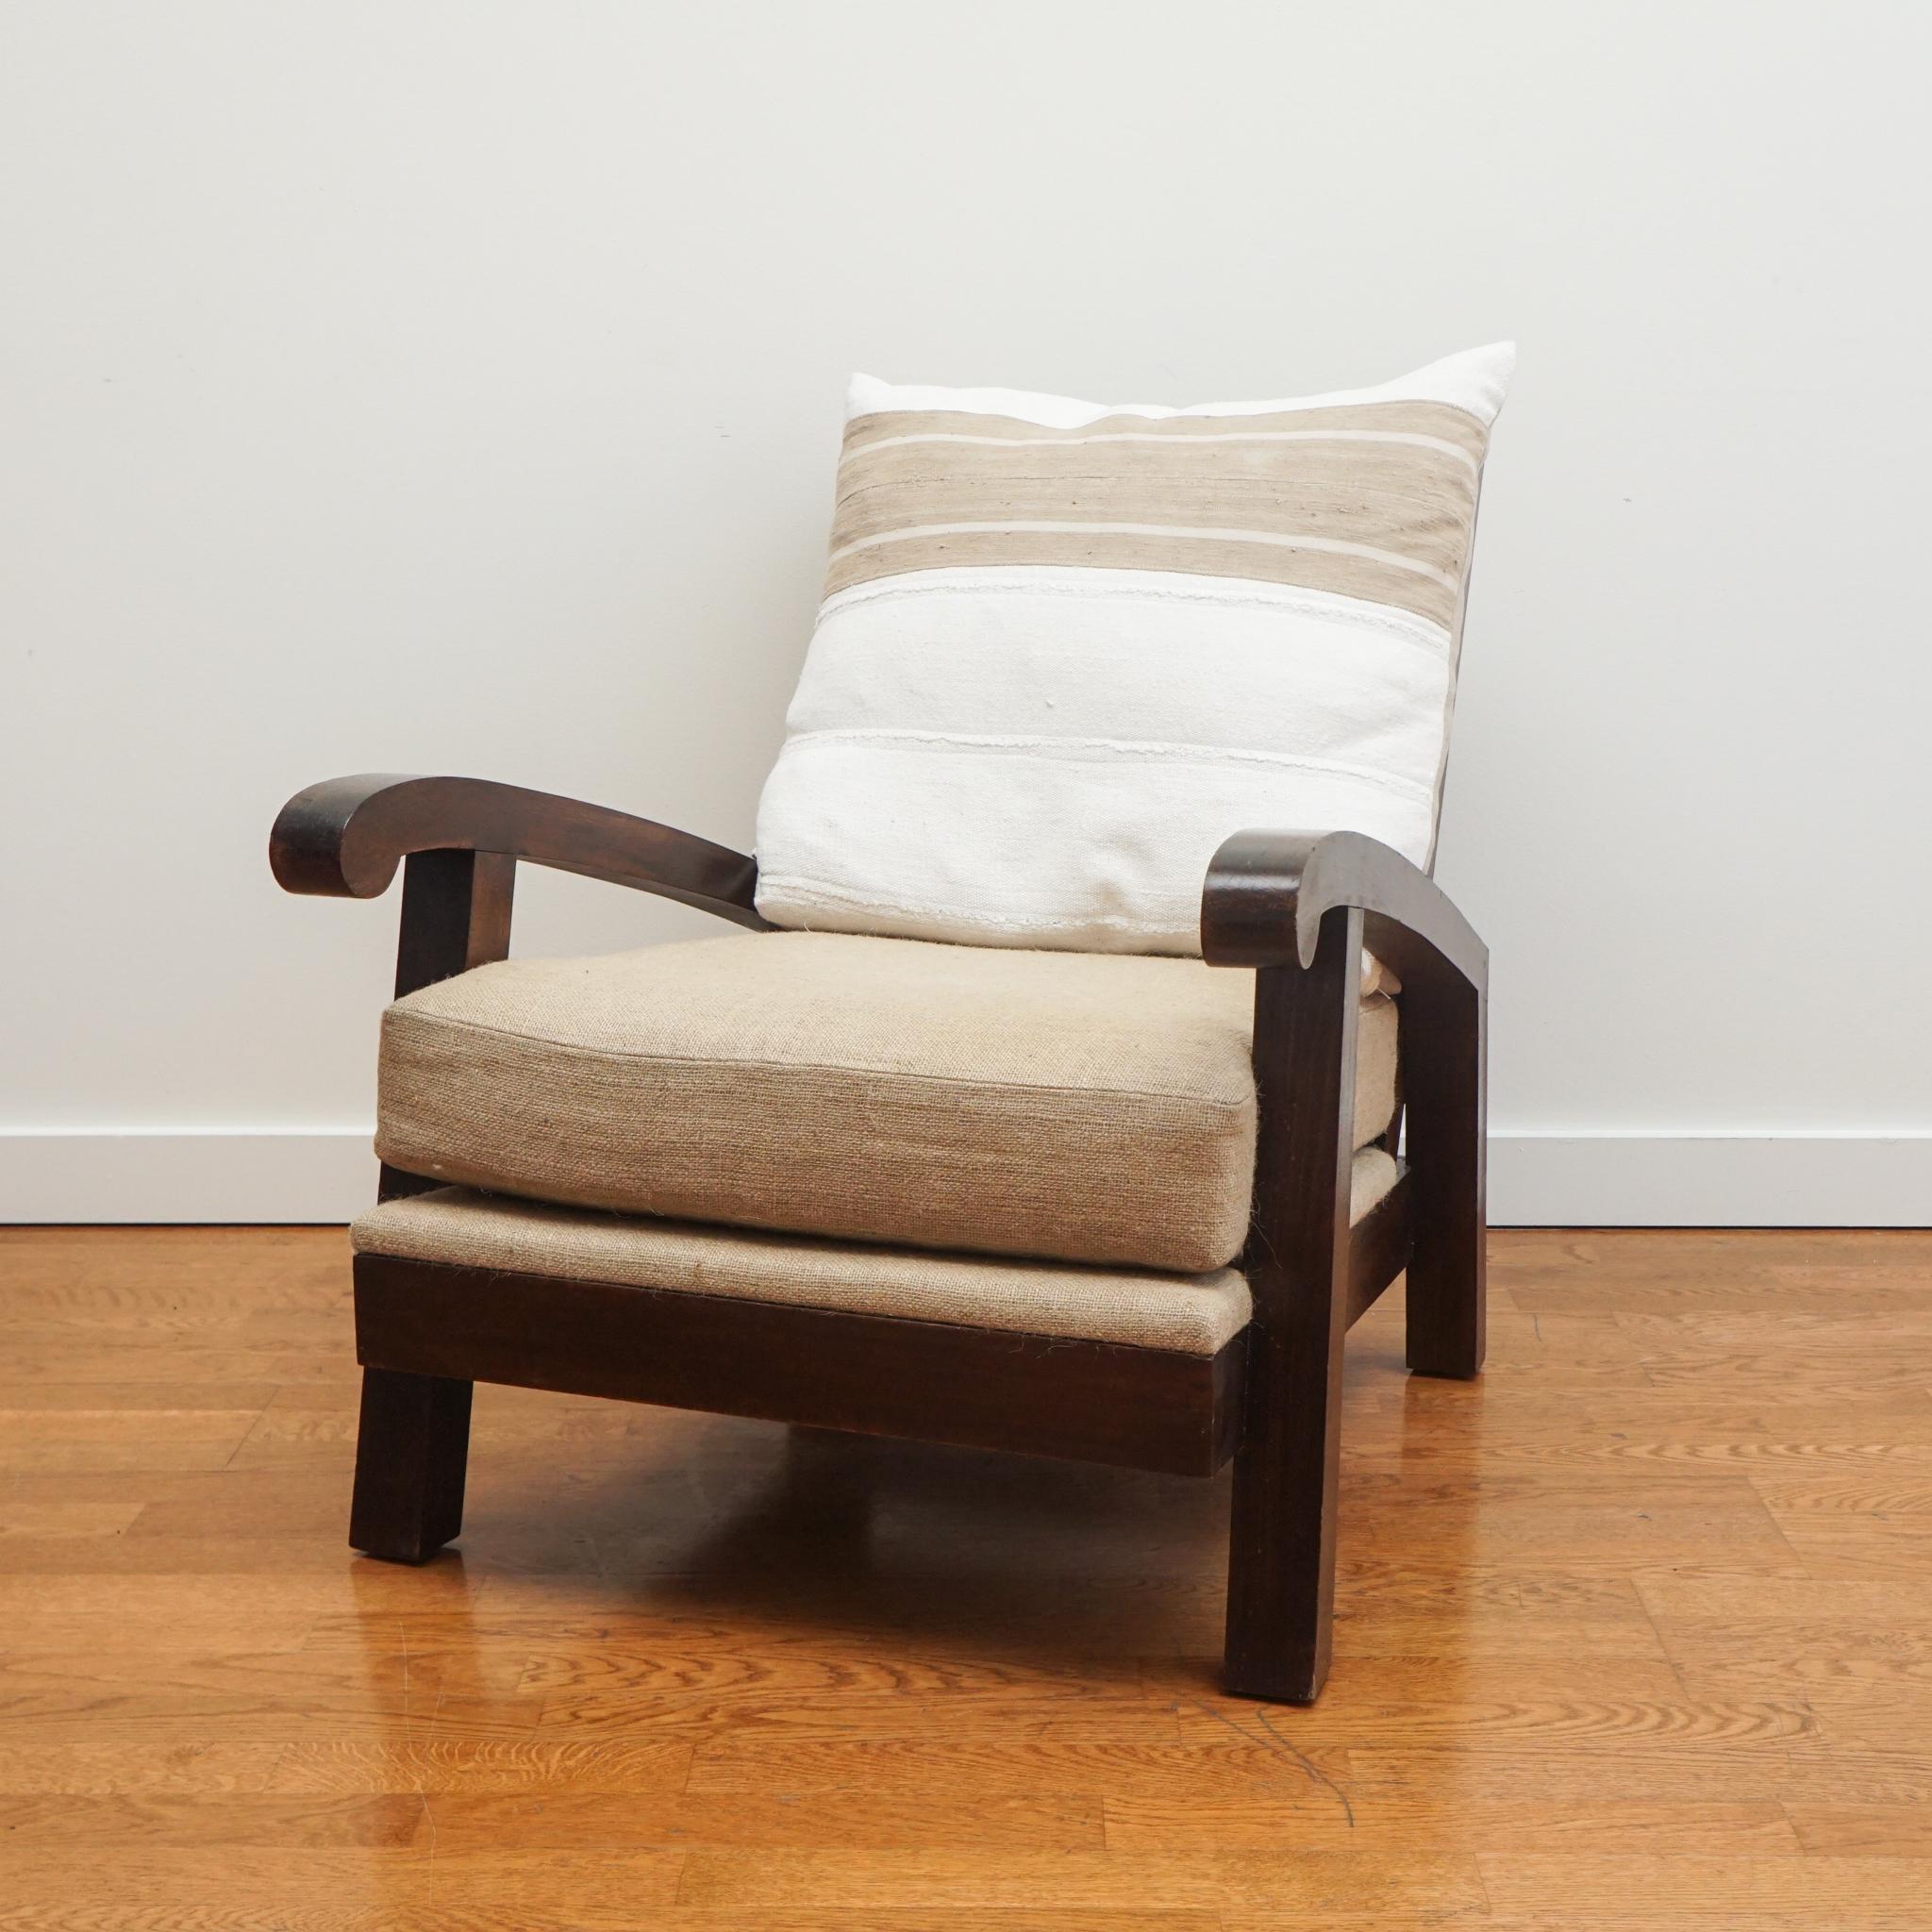 Le grand fauteuil ouvert, présenté ici, fait partie d'une paire attribuée au designer français René Gabriel. Les chaises ont été conçues pour un paquebot. Les chaises longues, de construction solide et de taille généreuse, ont été modernisées avec